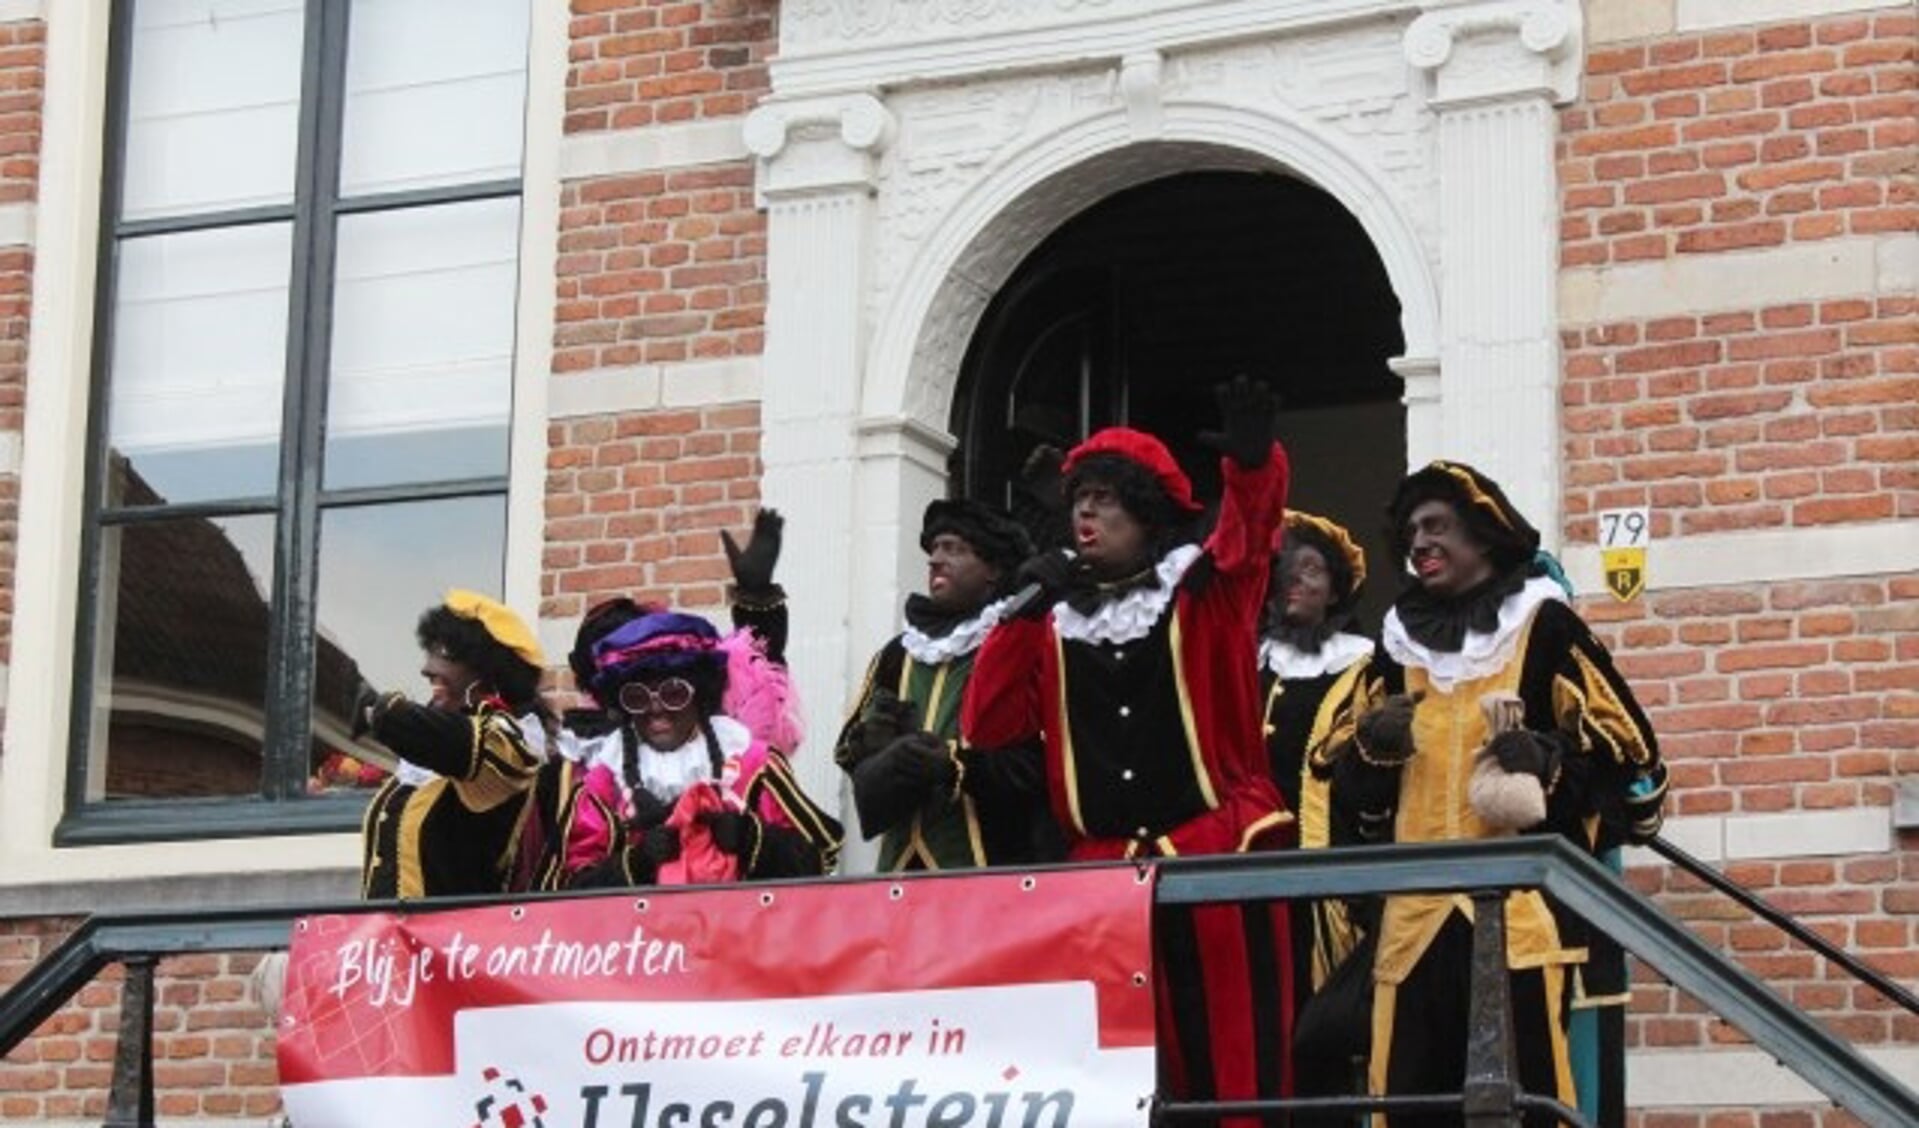 Zwarte Pieten - of zijn ze bruin? - tijdens een eerdere intocht van Sint in IJsselstein. (Foto: archief Lysette Verwegen)